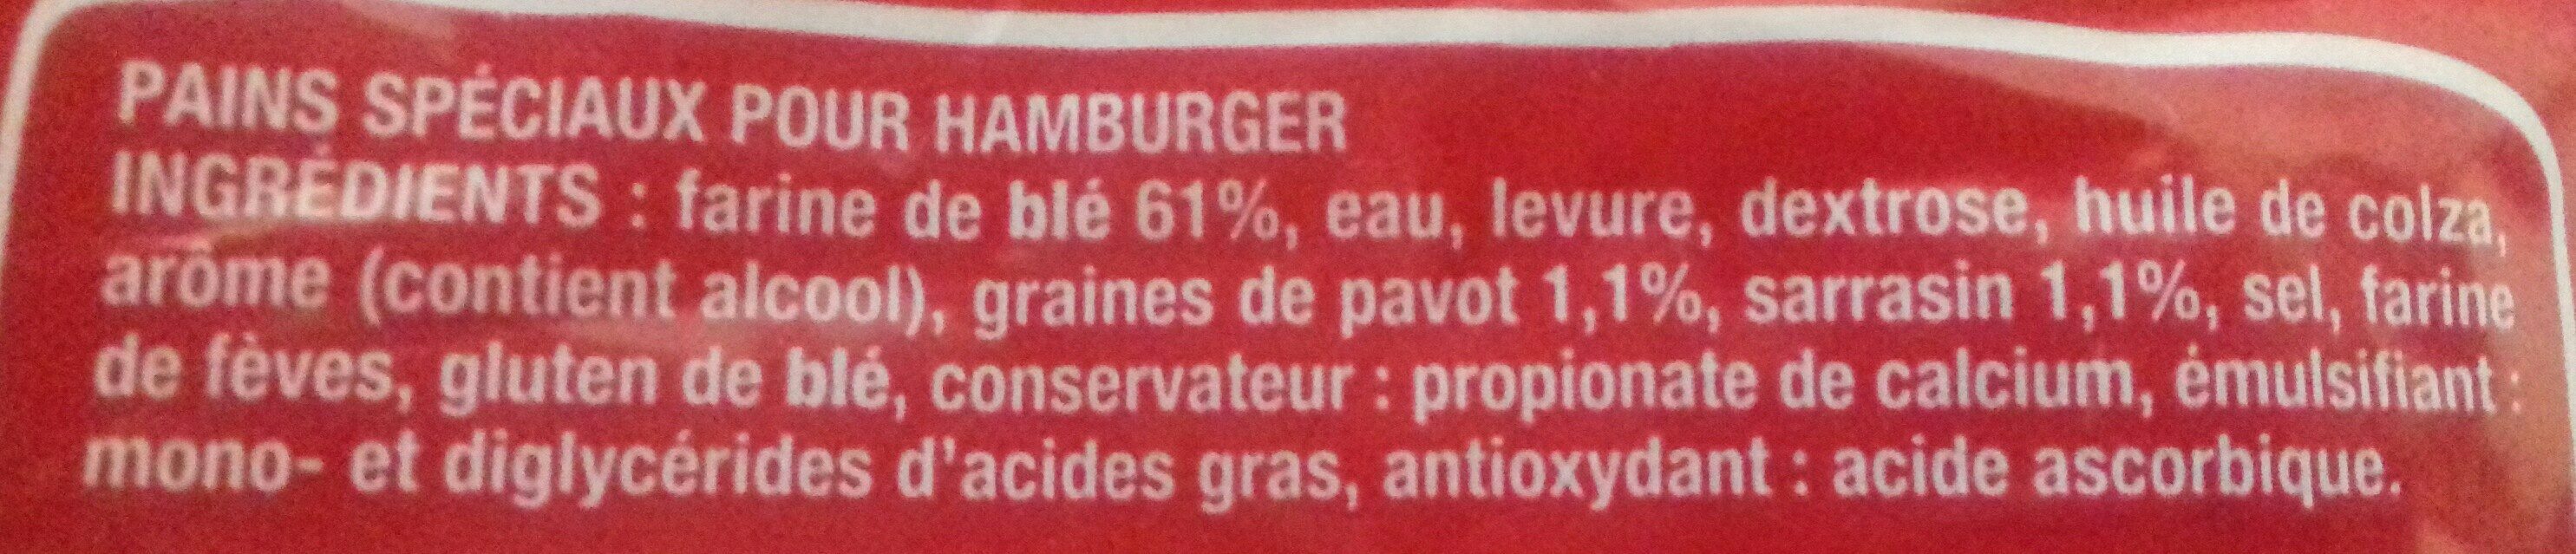 Burger pavot sarrasin - Ingredients - fr